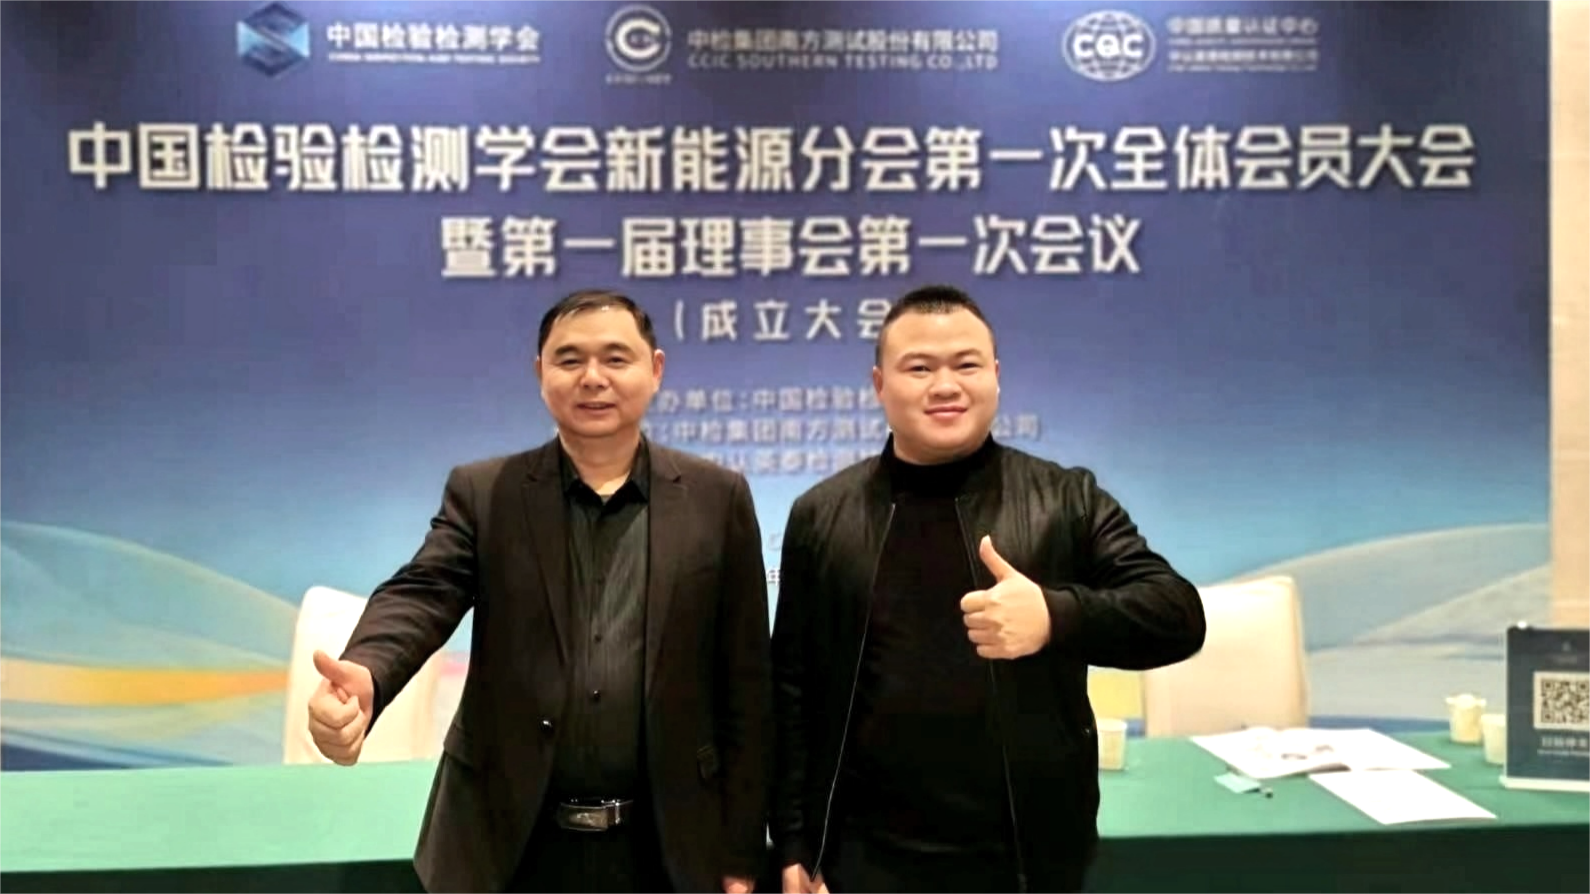 上海柏毅試驗設備有限公司參加中國檢驗檢測學會新能源分會成立大會